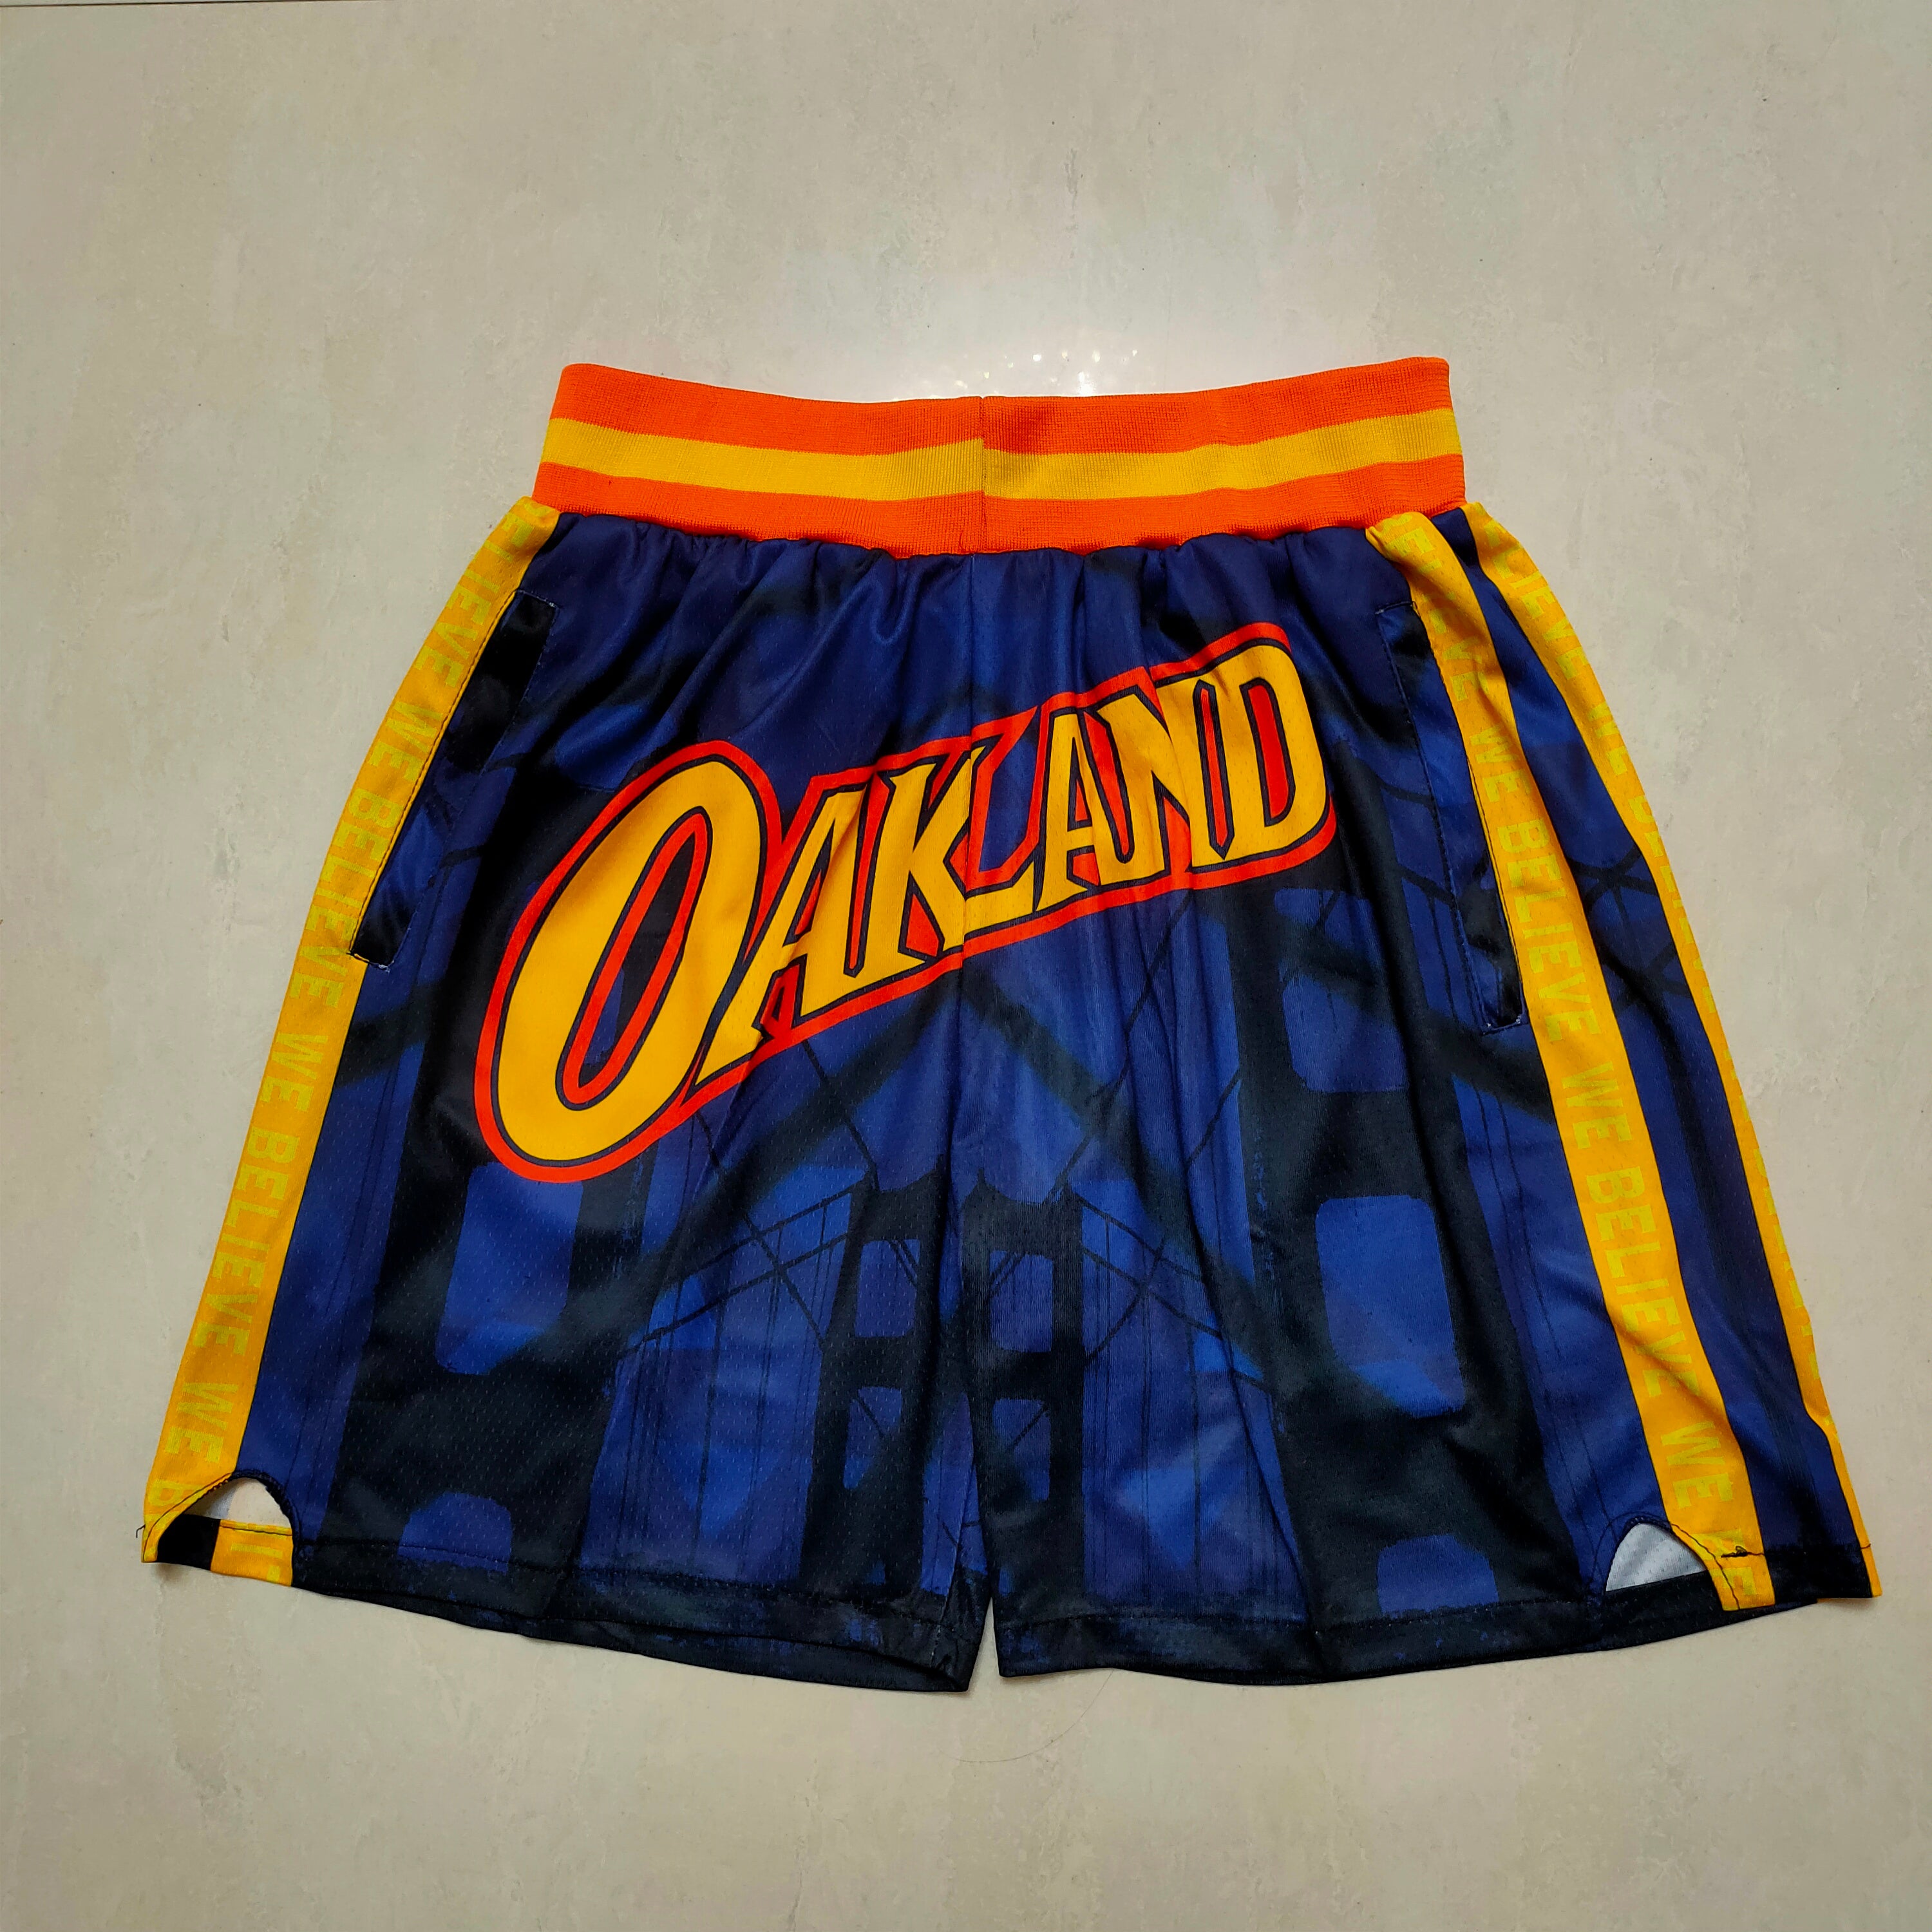 Oakland City Shorts